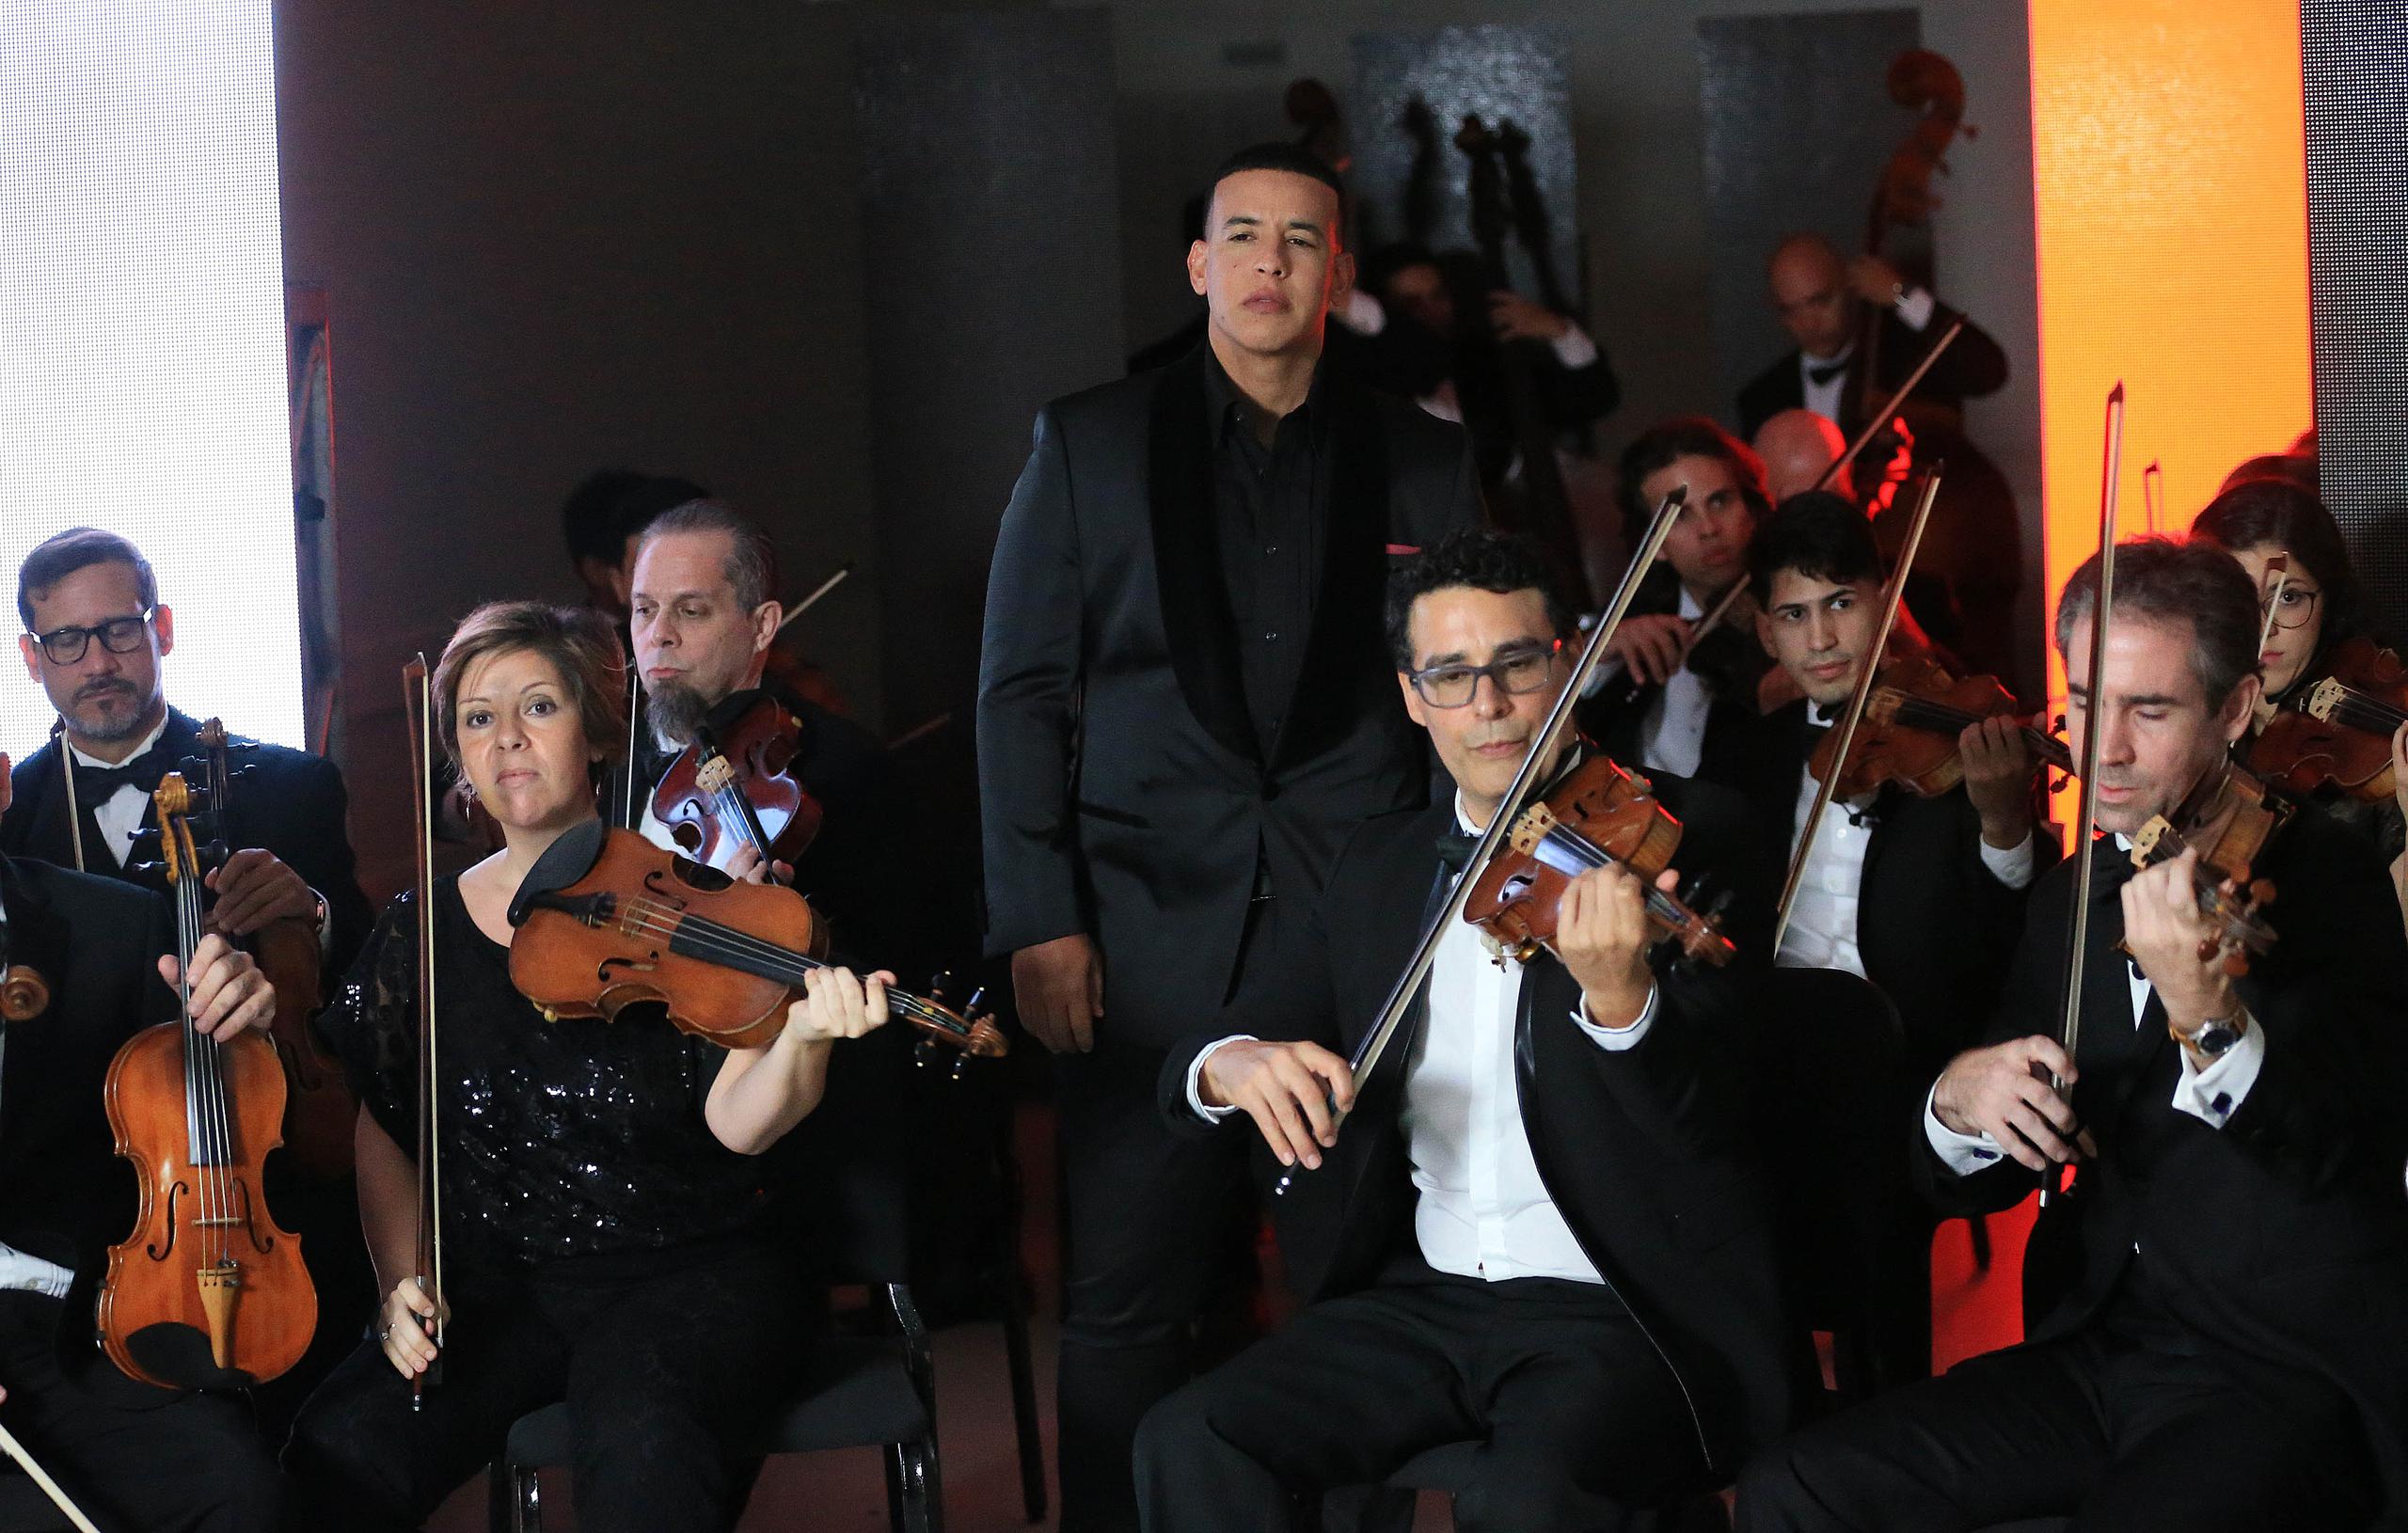 El vídeo, grabado junto con la Orquesta Sinfónica e Puerto Rico, fue parte de una campaña de la organización Susan G. Komen.